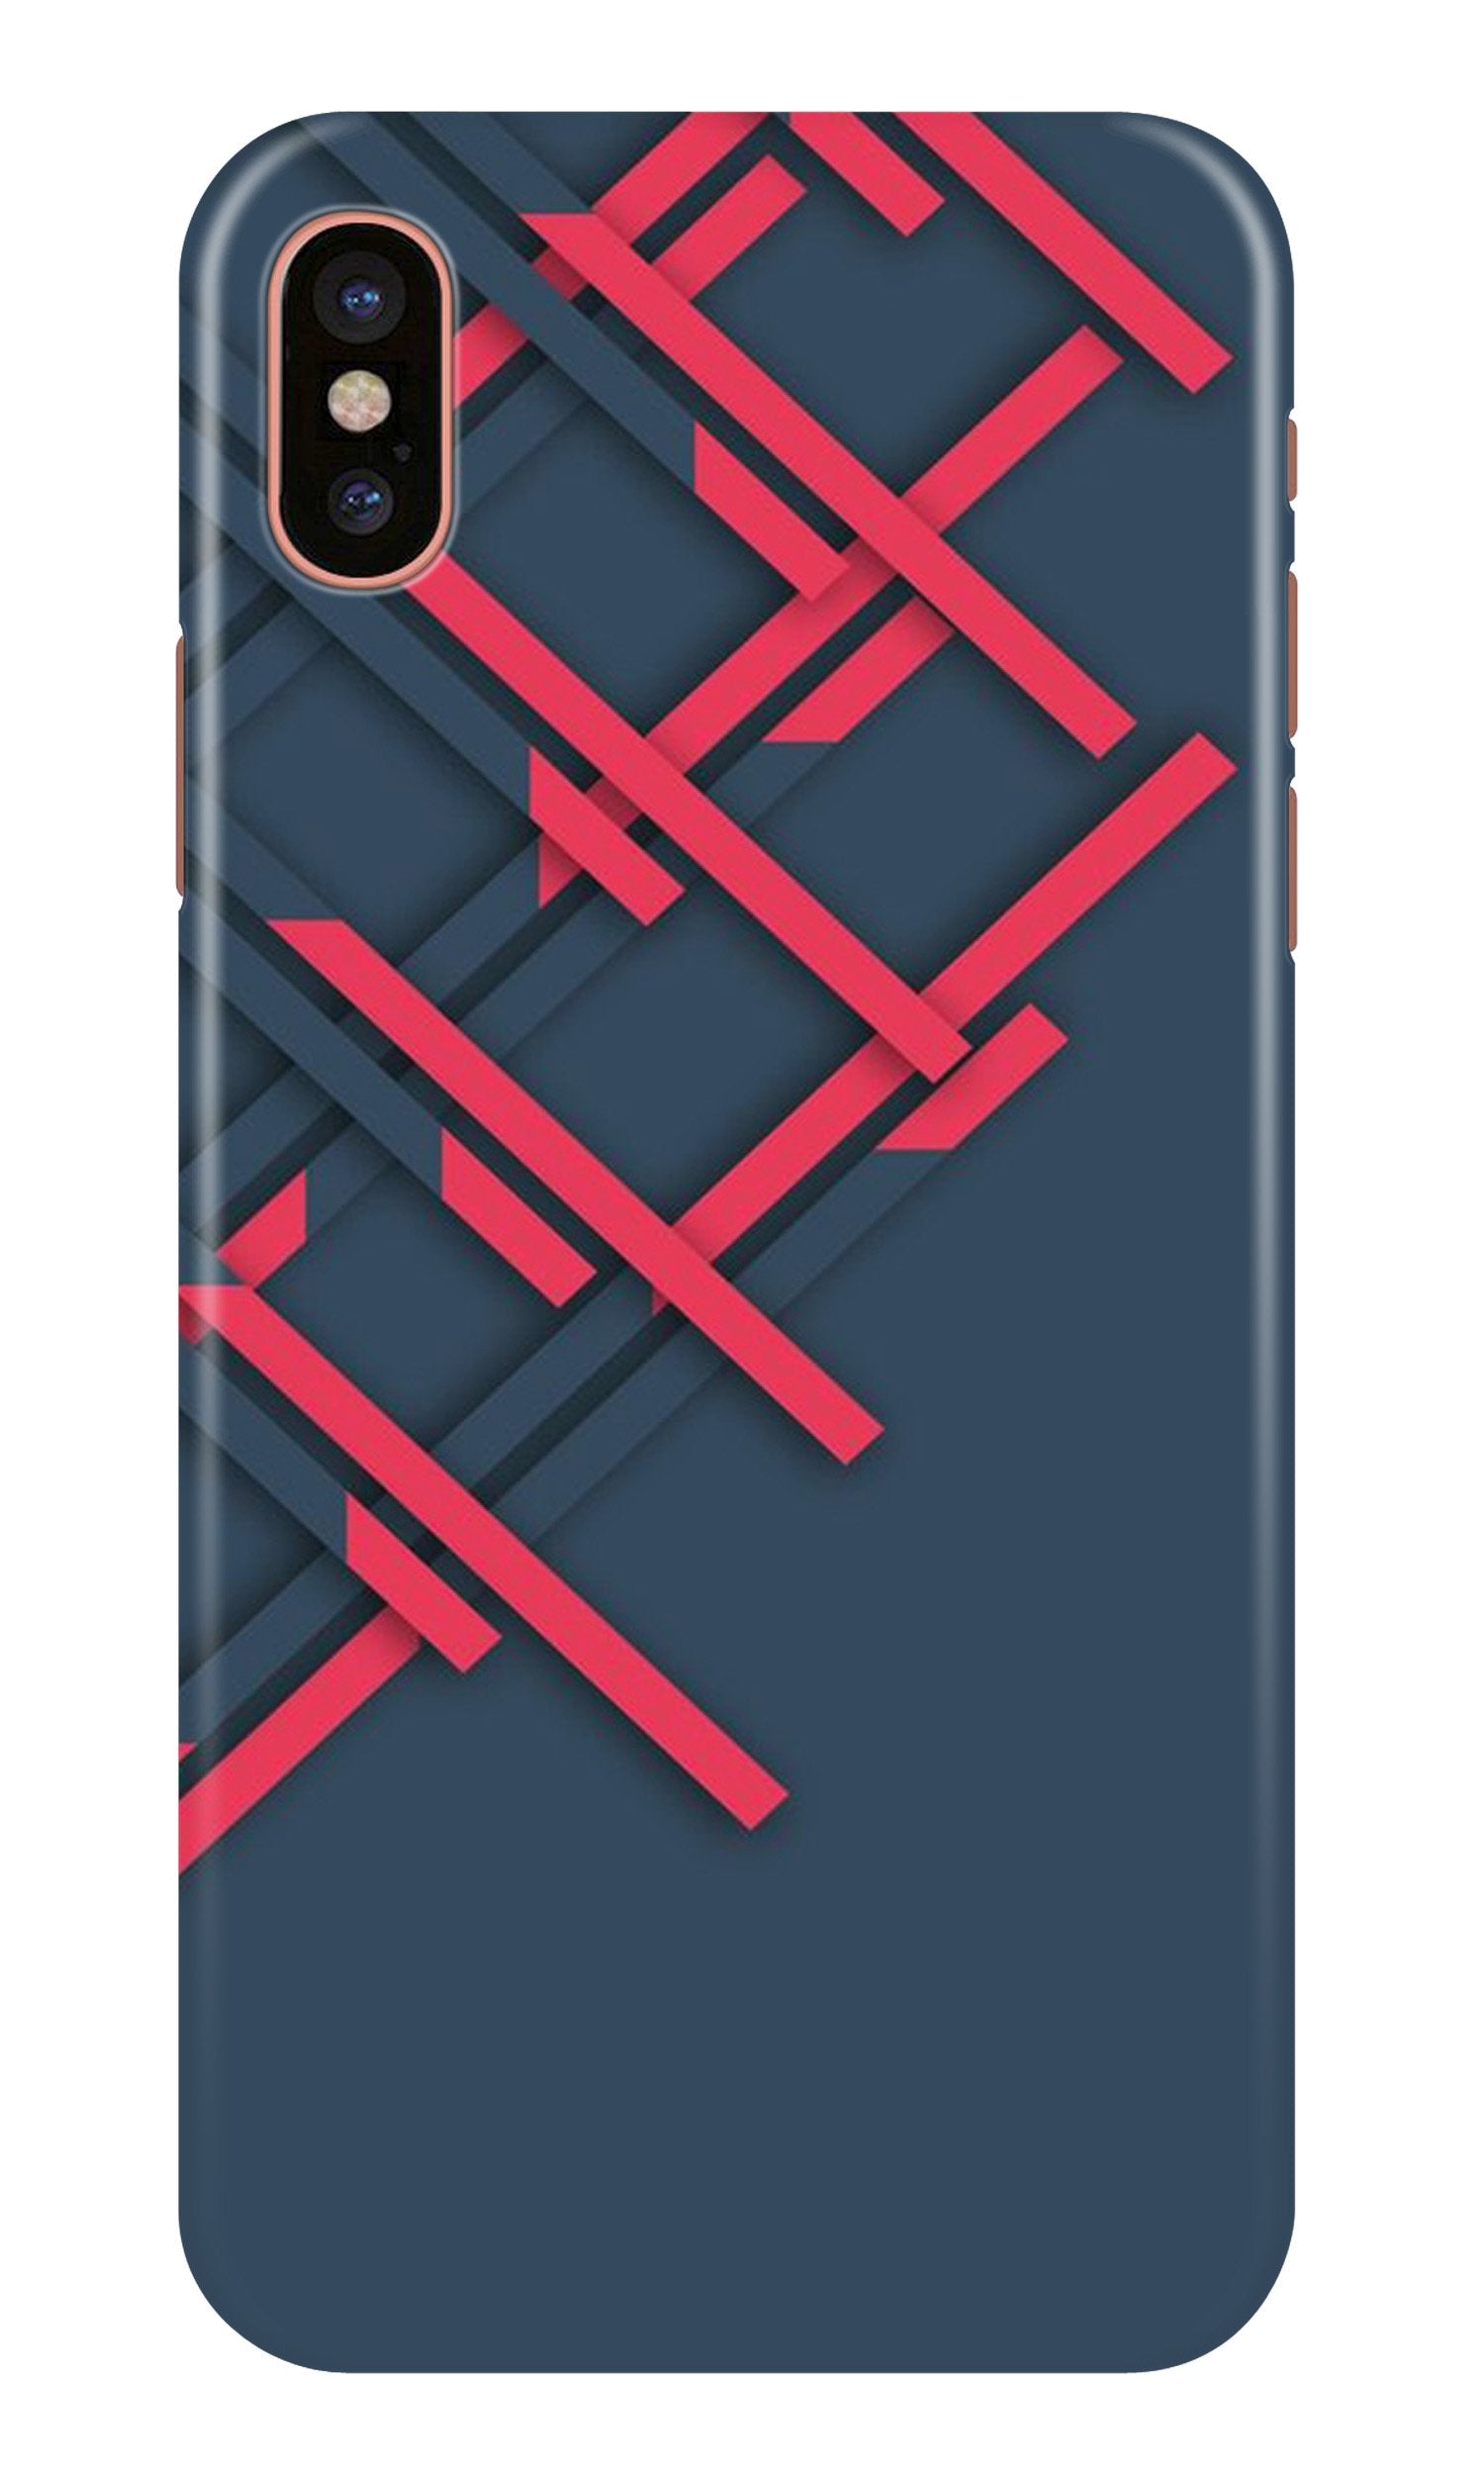 Designer Case for iPhone Xs Max (Design No. 285)